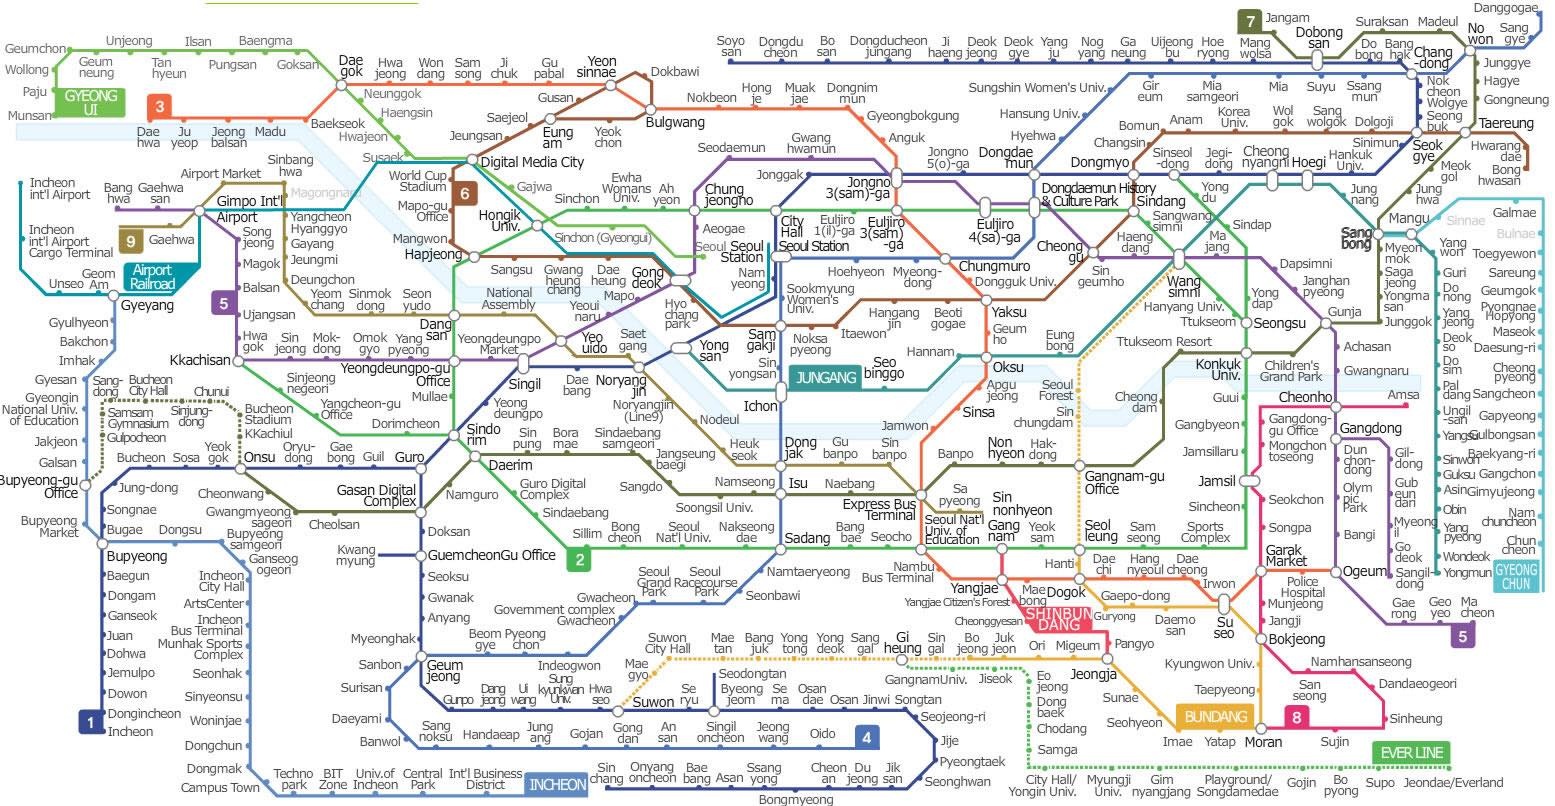 Tàu điện ngầm Subway Seoul Hàn Quốc 2024:
Cùng khám phá tàu điện ngầm Subway tại Seoul - một trong những thành phố phát triển nhất thế giới. Từ năm 2024, hệ thống tàu điện ngầm này sẽ được nâng cấp để mang lại trải nghiệm di chuyển tuyệt vời hơn bao giờ hết. Hãy đón các chuyến đi tuyến mới với đầy đủ tiện ích và dịch vụ hoàn hảo.